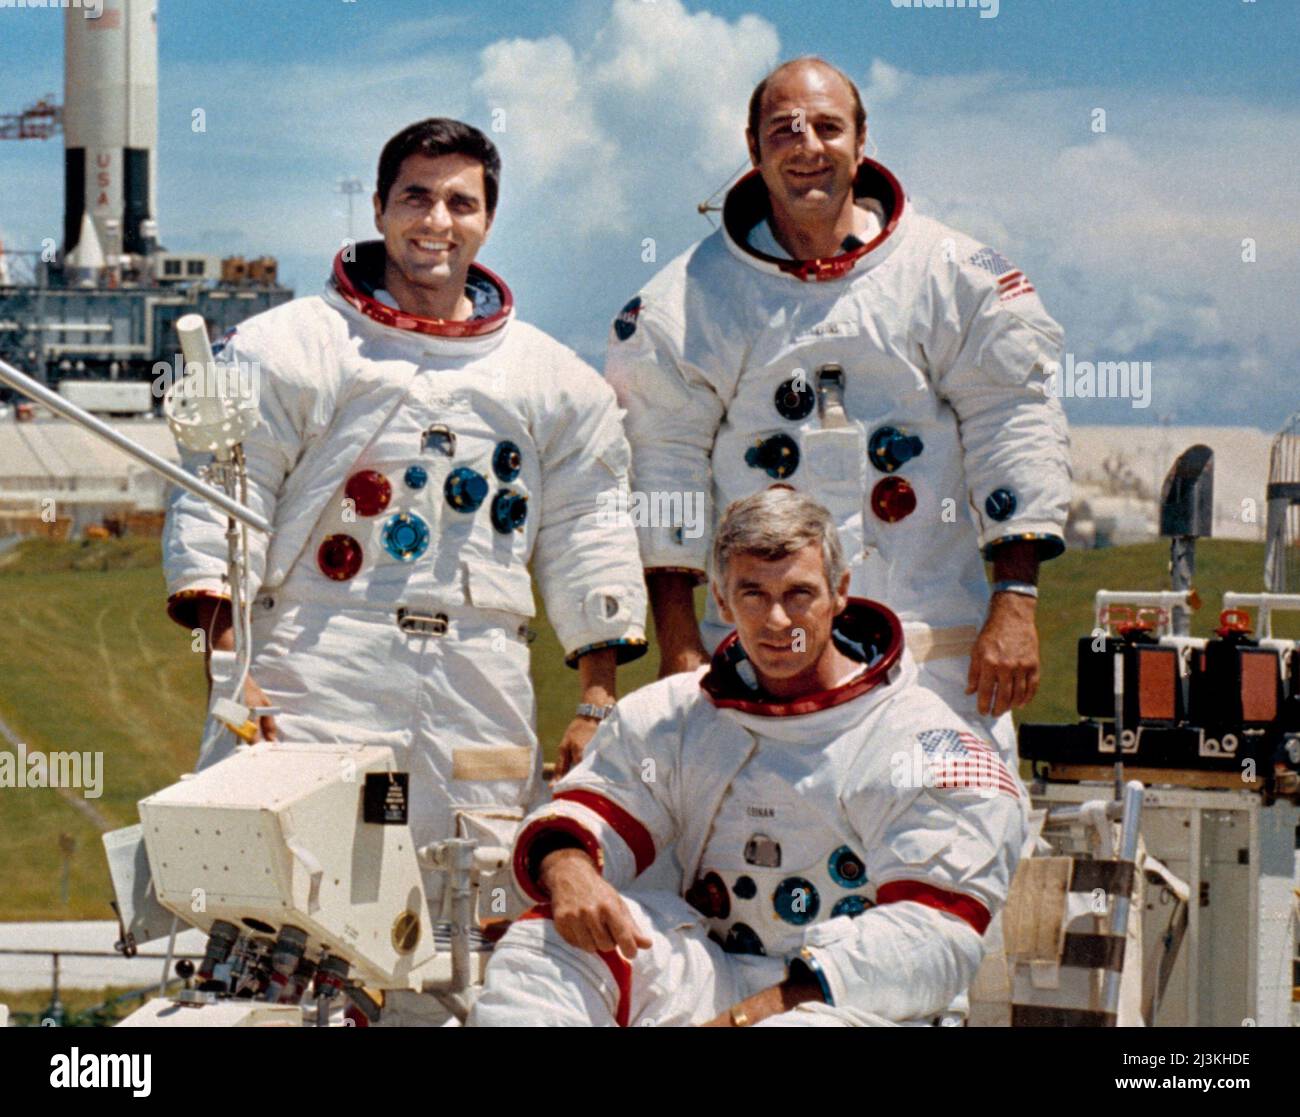 Die Hauptmannschaft für die Mondlandemission Apollo 17 sind: Commander, Eugene Cernan (sitzend), Command Module Pilot Ronald Evans (rechts) und Lunar Module Pilot, Harrison Schmitt. Apollo 17 war die letzte bemannte Mondmission - sie flog im Dezember 1972. Stockfoto